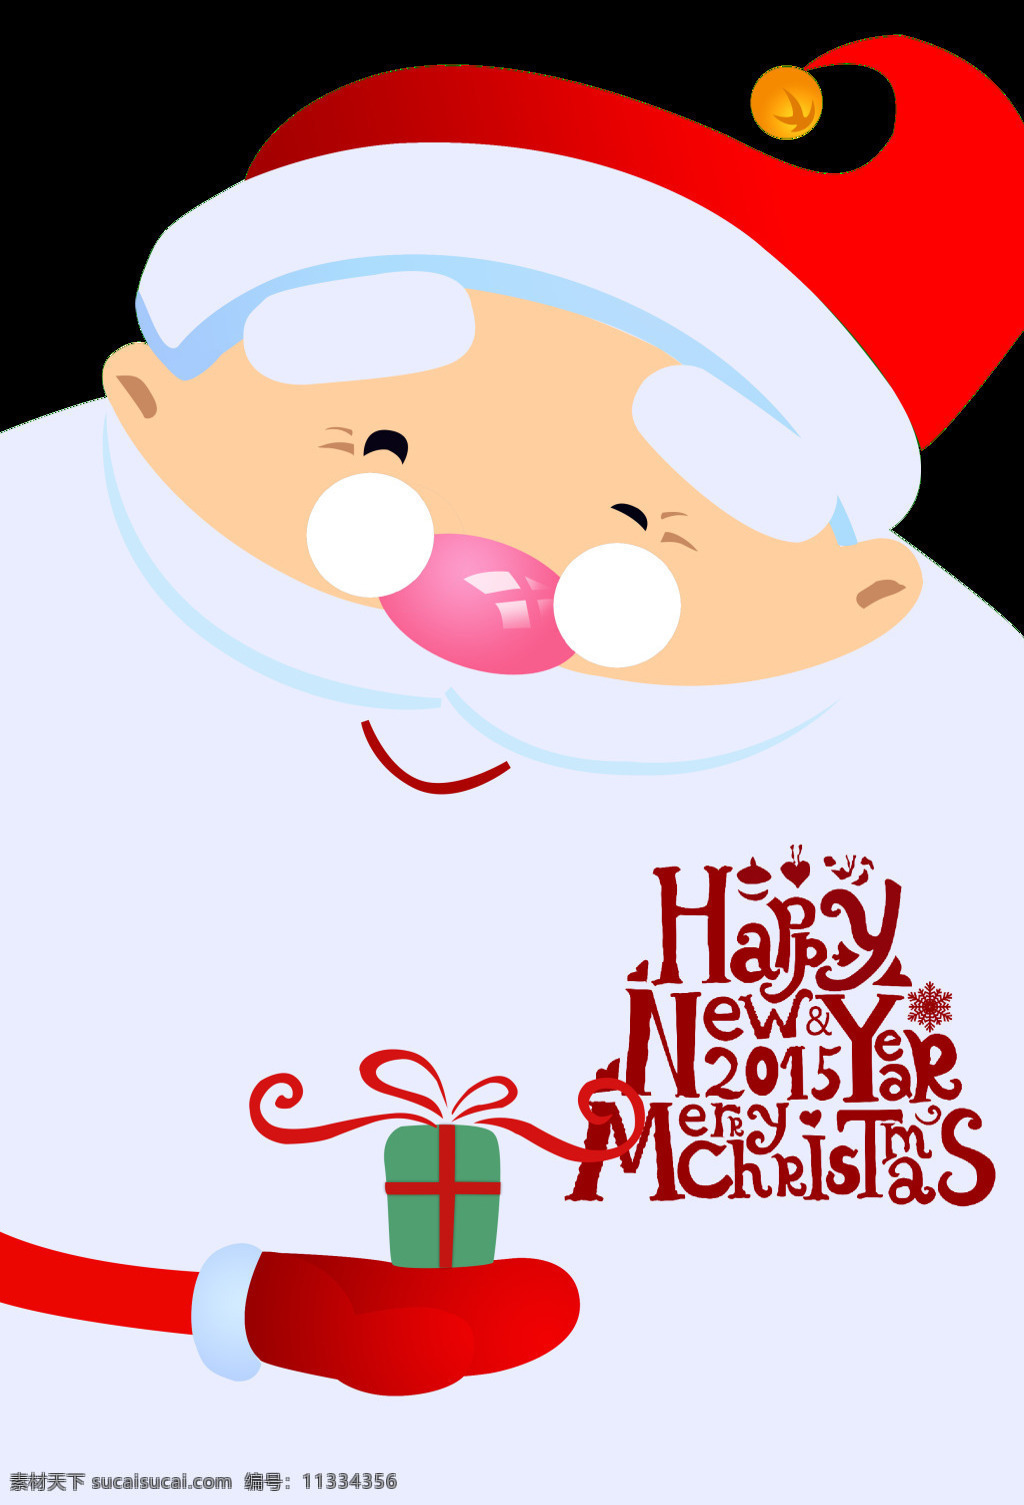 童趣 卡通 圣诞老人 元素 christmas merry 设计素材 圣诞 圣诞快乐 圣诞礼物 圣诞免抠元素 圣诞素材 童趣圣诞老人 新年快乐